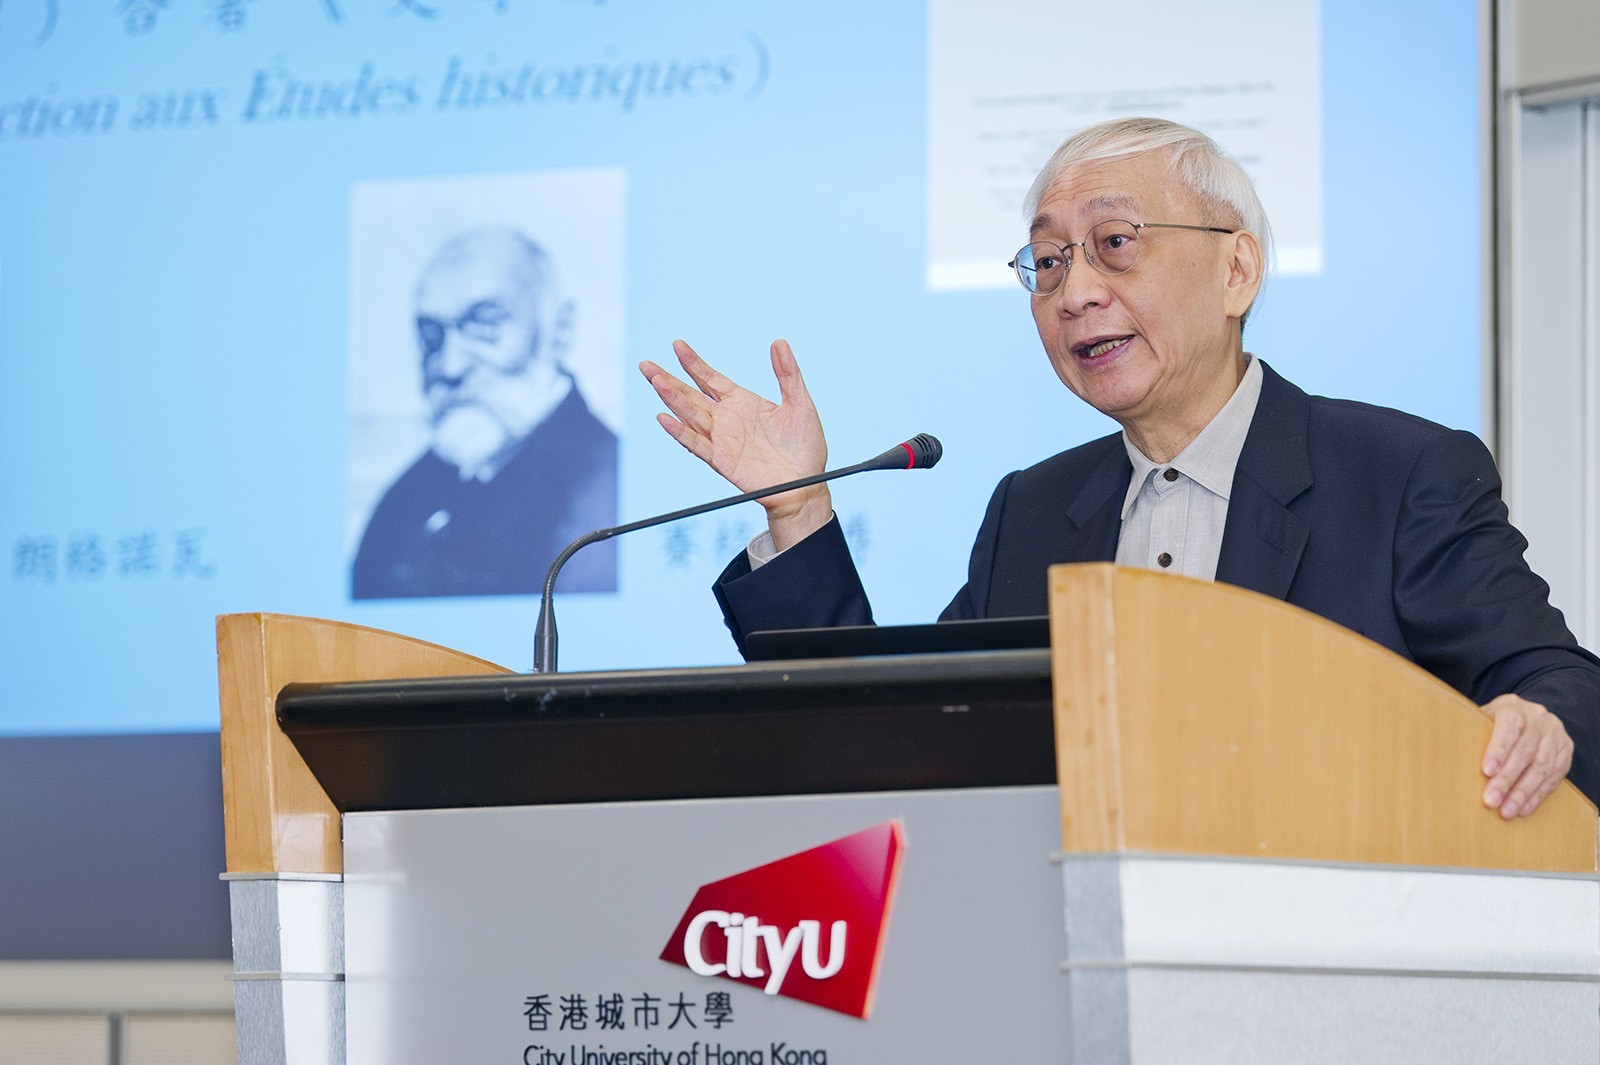 Professor Huang Chin-shing